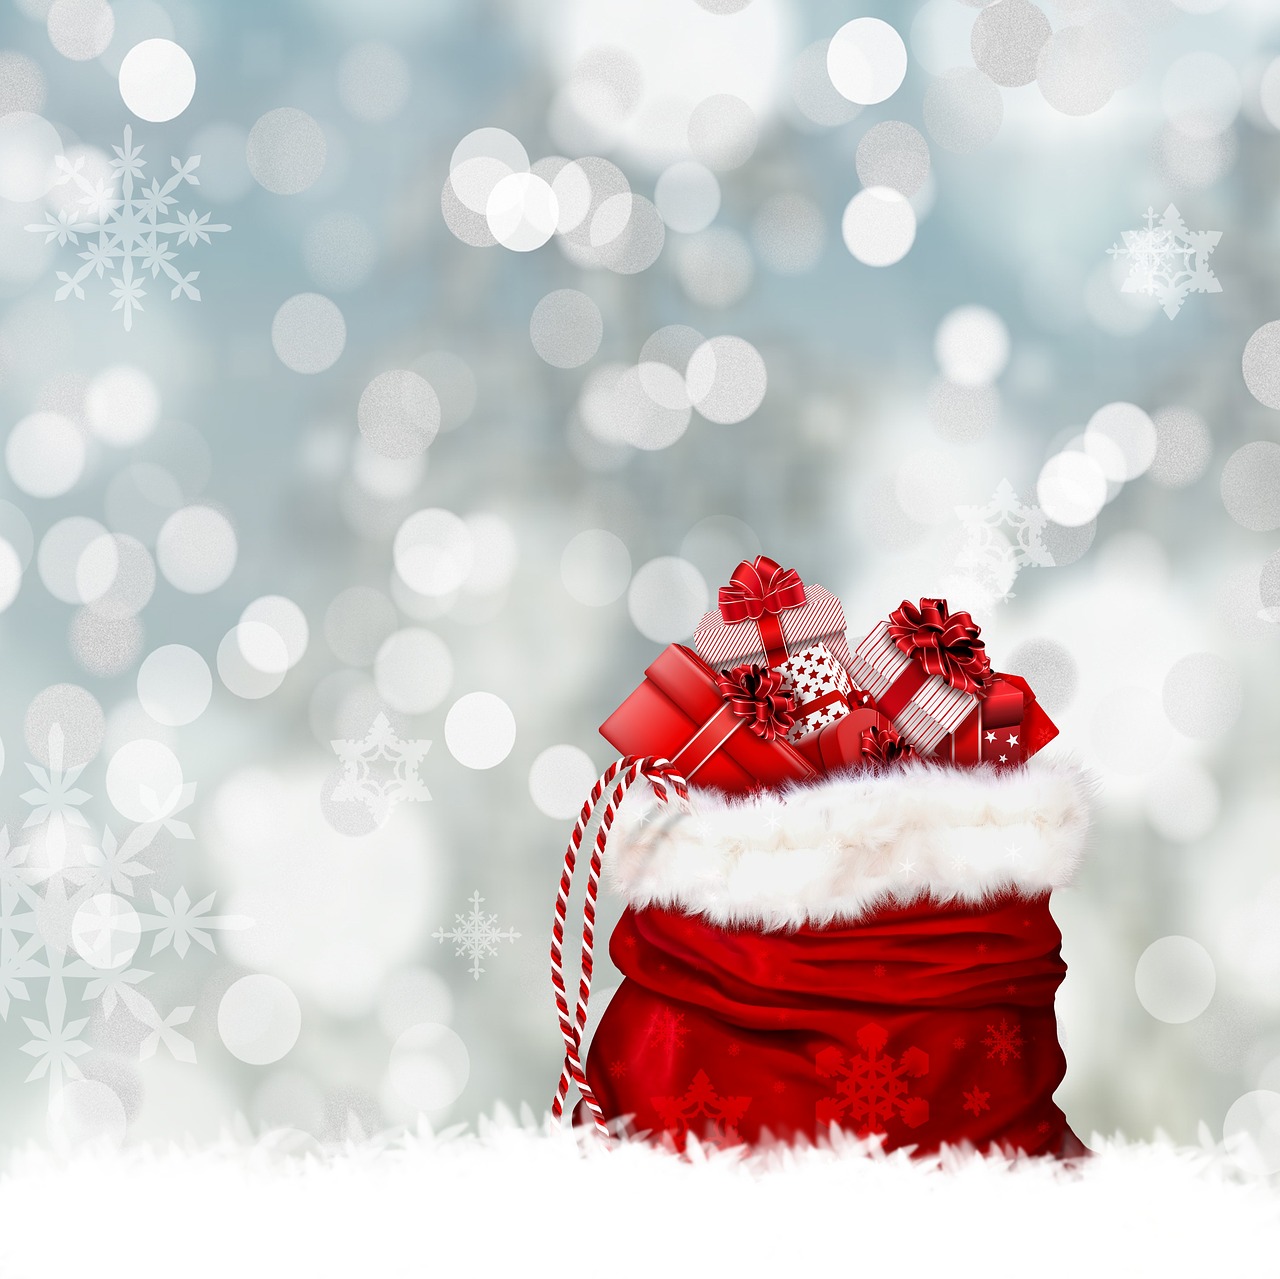 Image - christmas gifts gift bag bag red